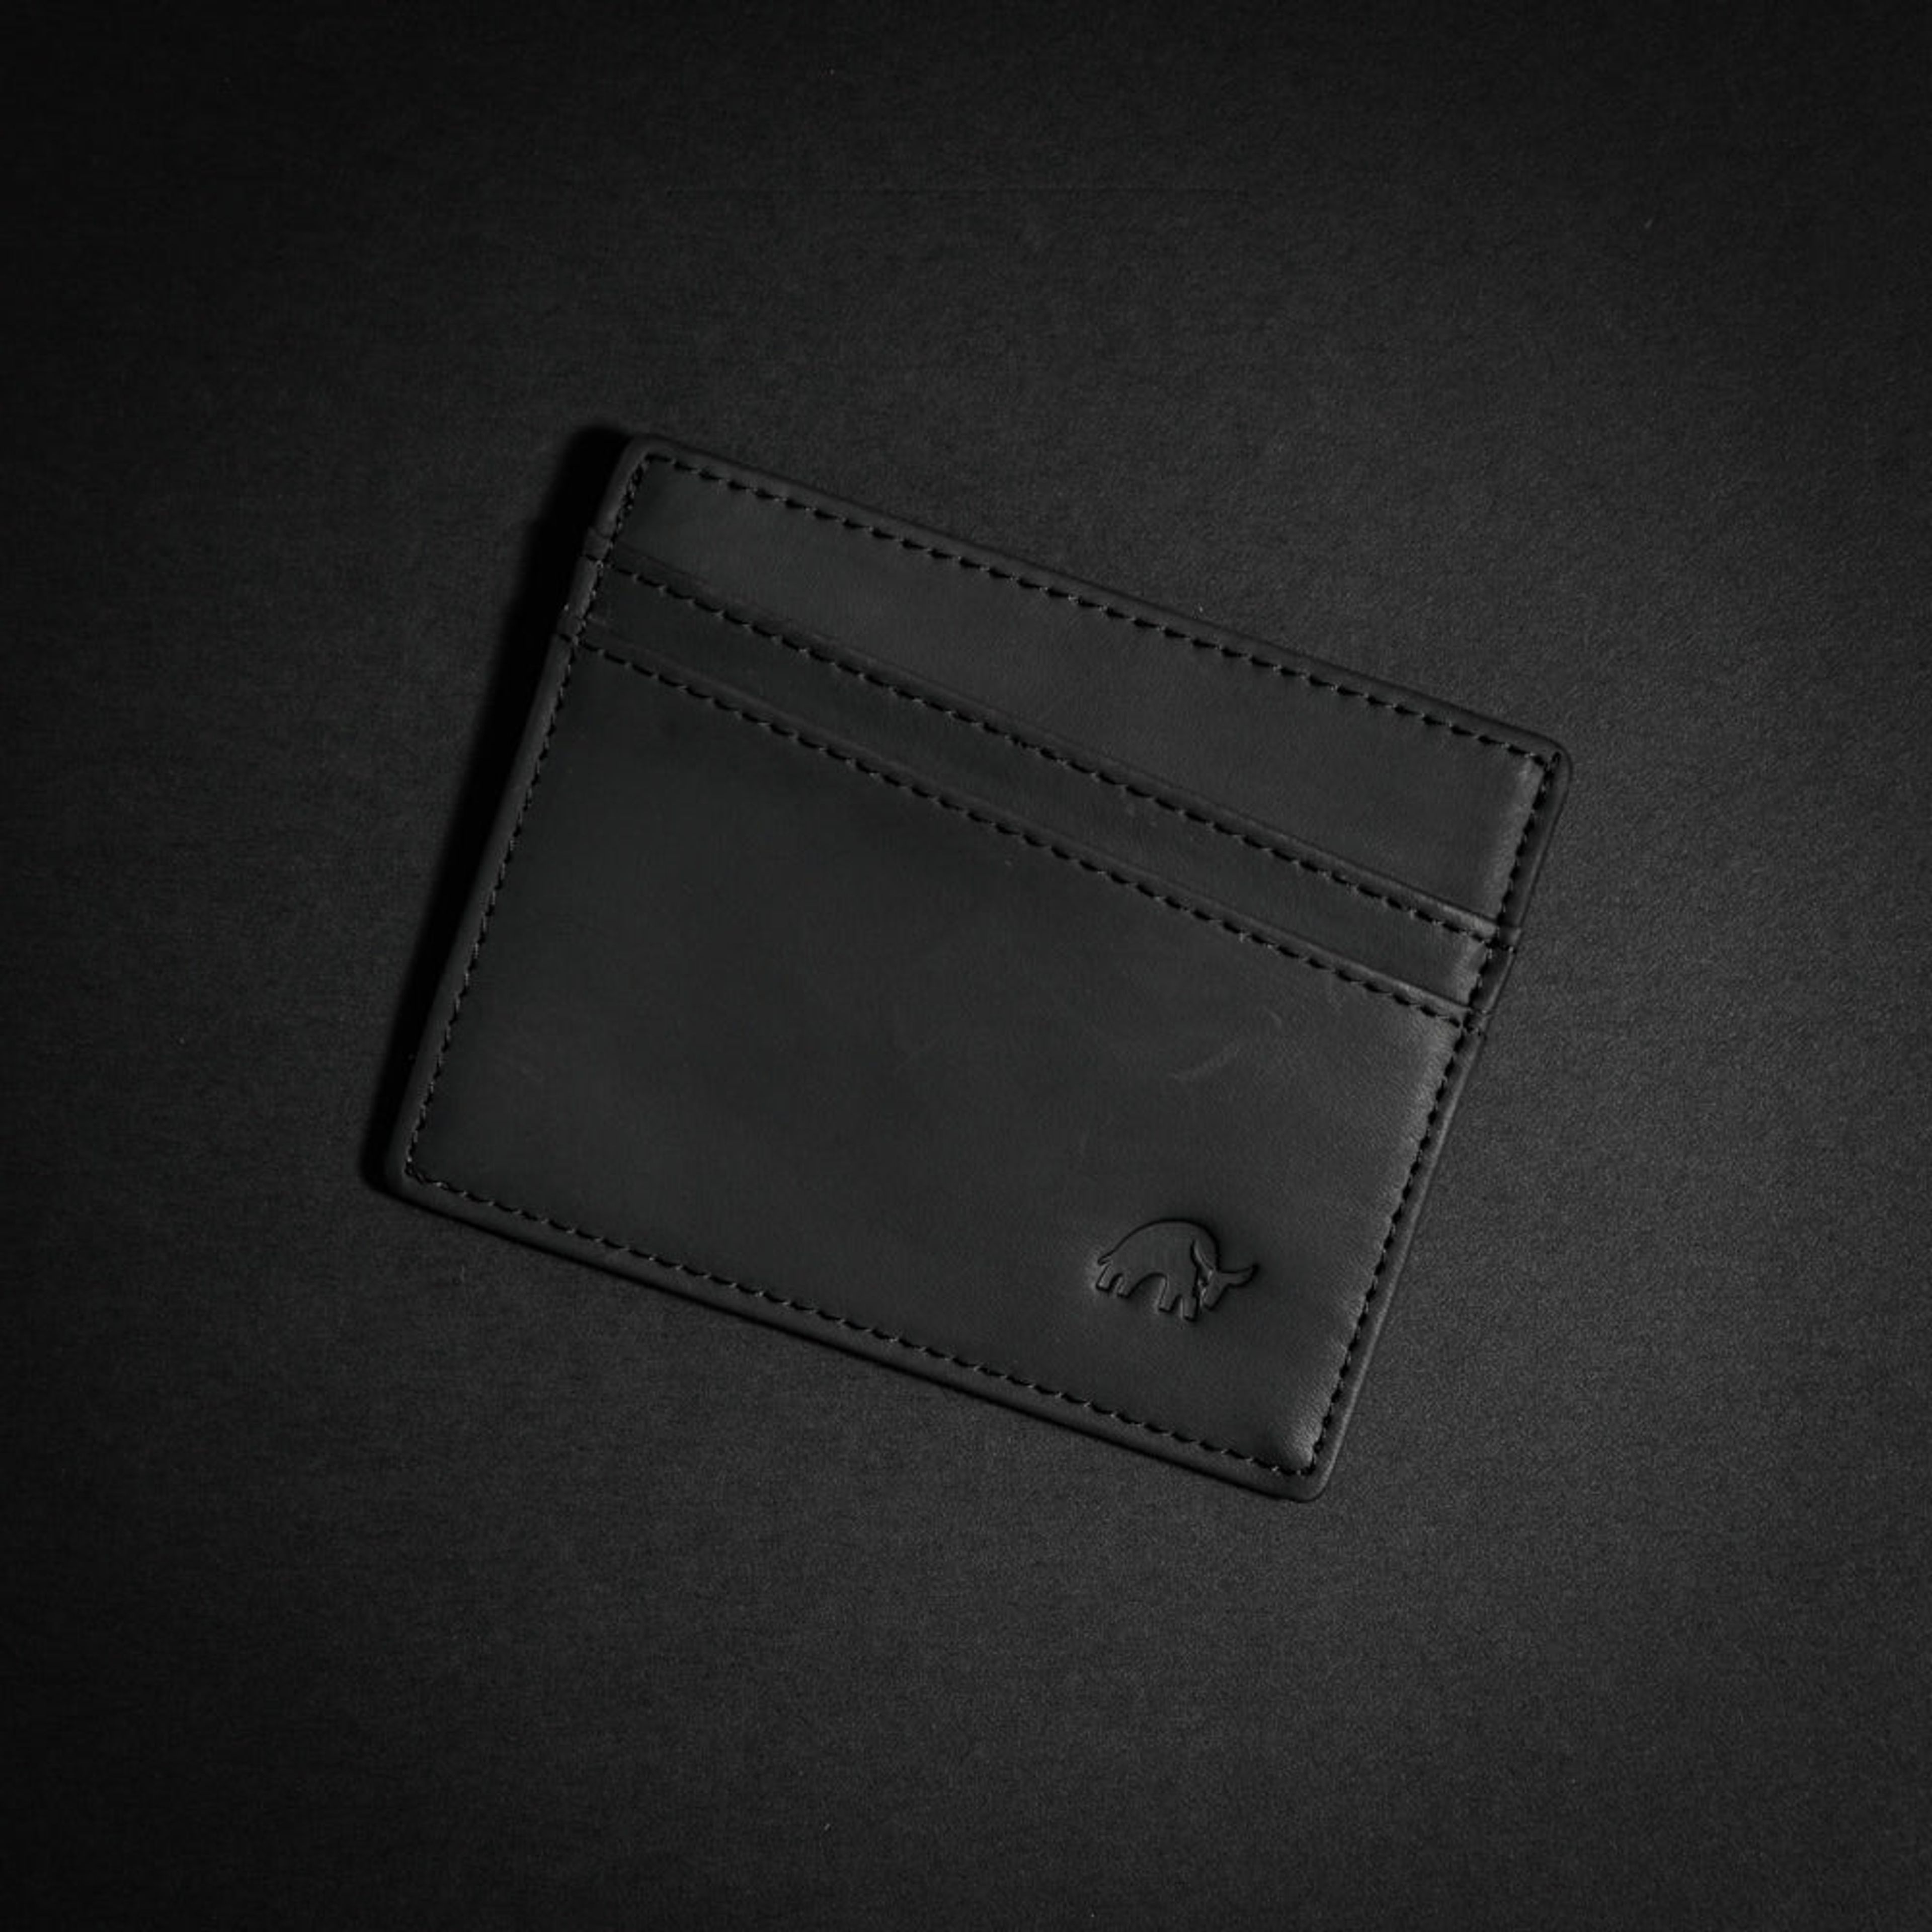 BACKORDER - The Card Holder - Black Edition